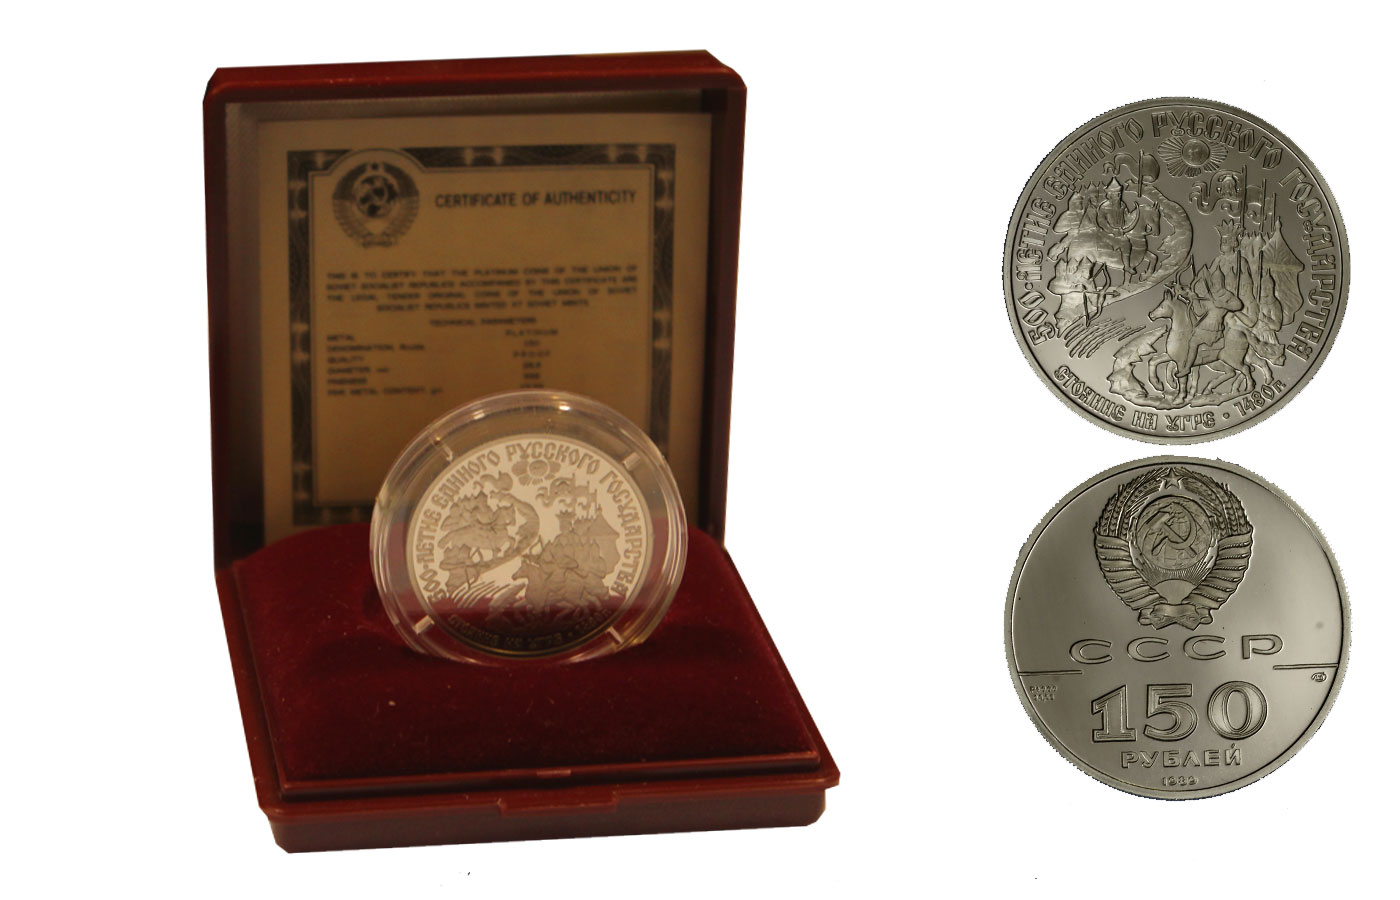 "500 stato russo unito" - 150 rubli gr. 15,55 in platino 999/ - in confezione originale